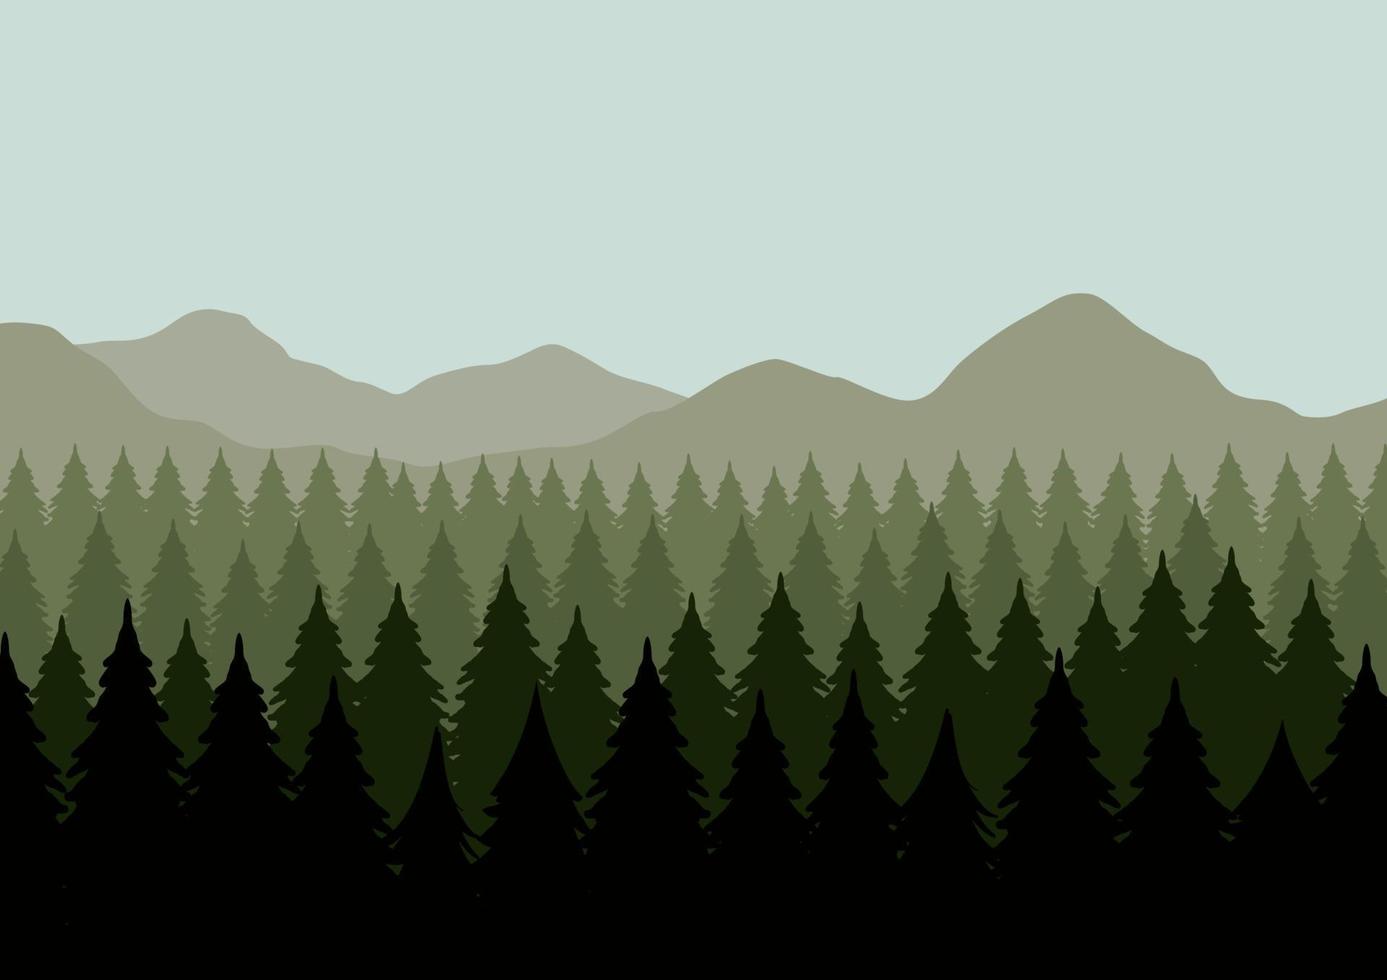 pinos y montañas. ilustración vectorial de un bosque de coníferas. vector